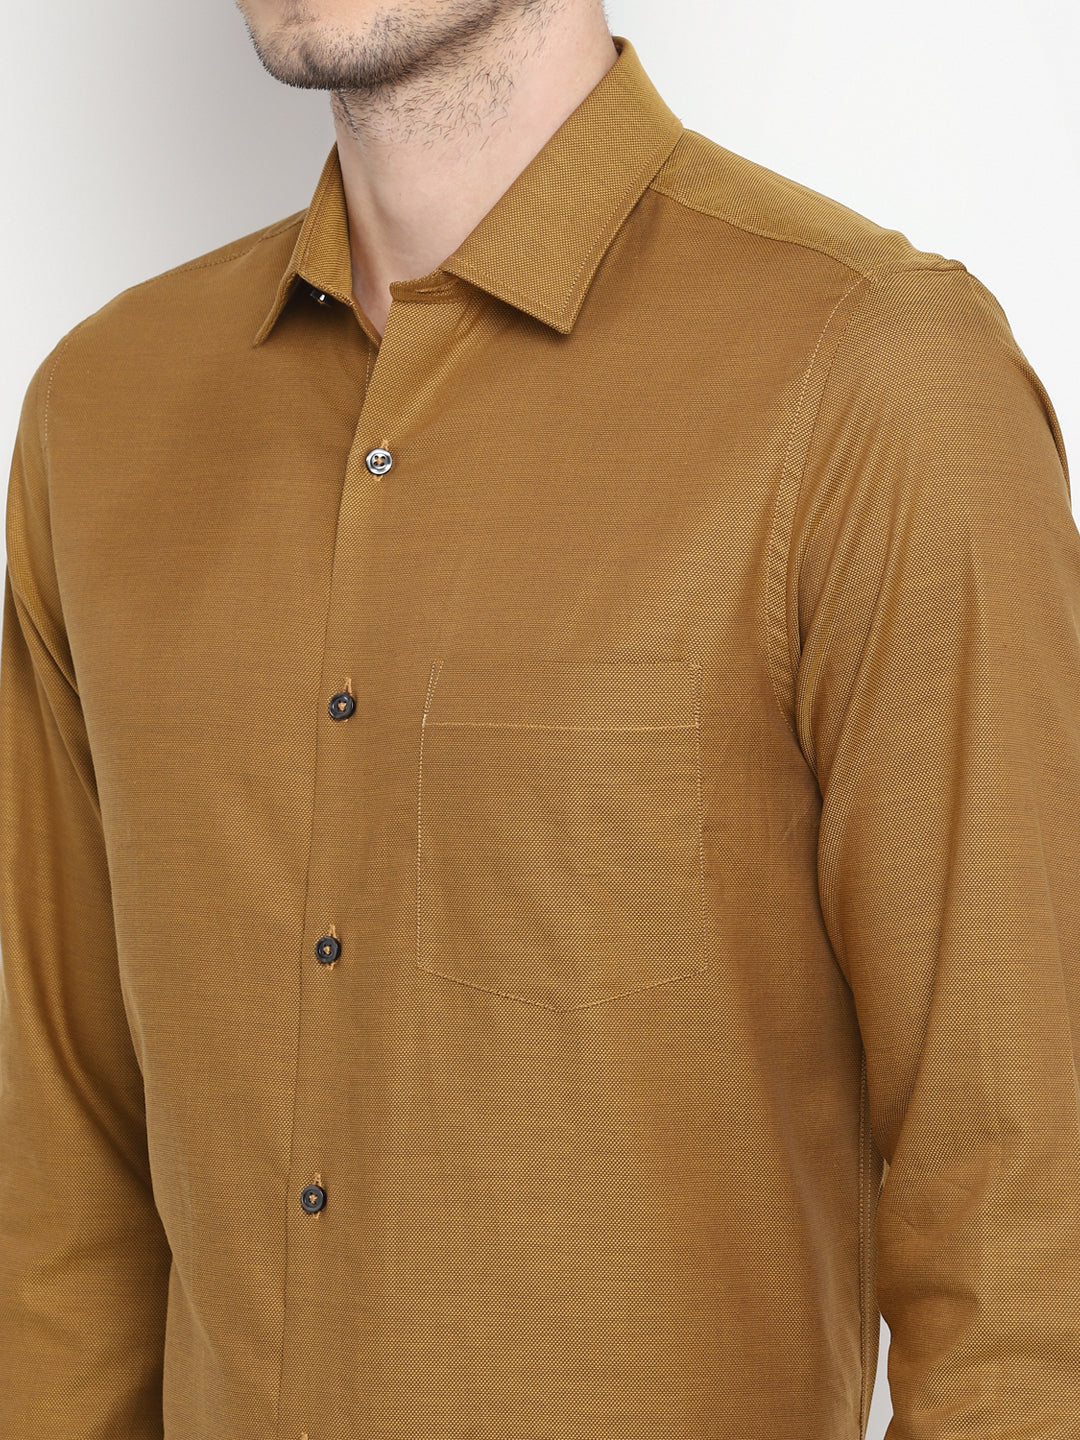 Self Design Brown Slim Fit Formal Shirt